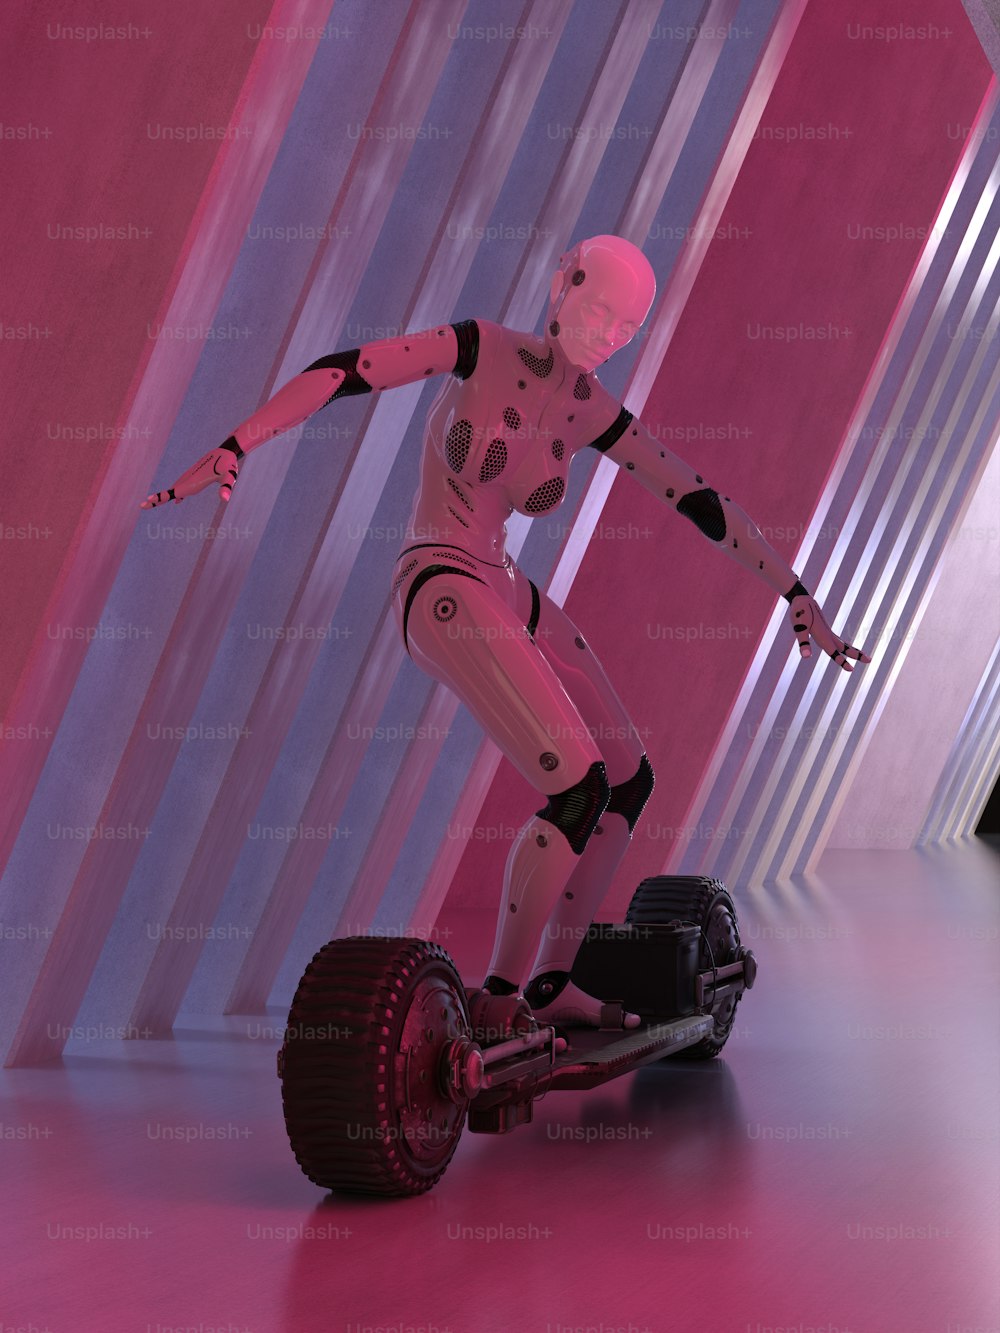 Un robot está montando un vuelo estacionario en una habitación rosa